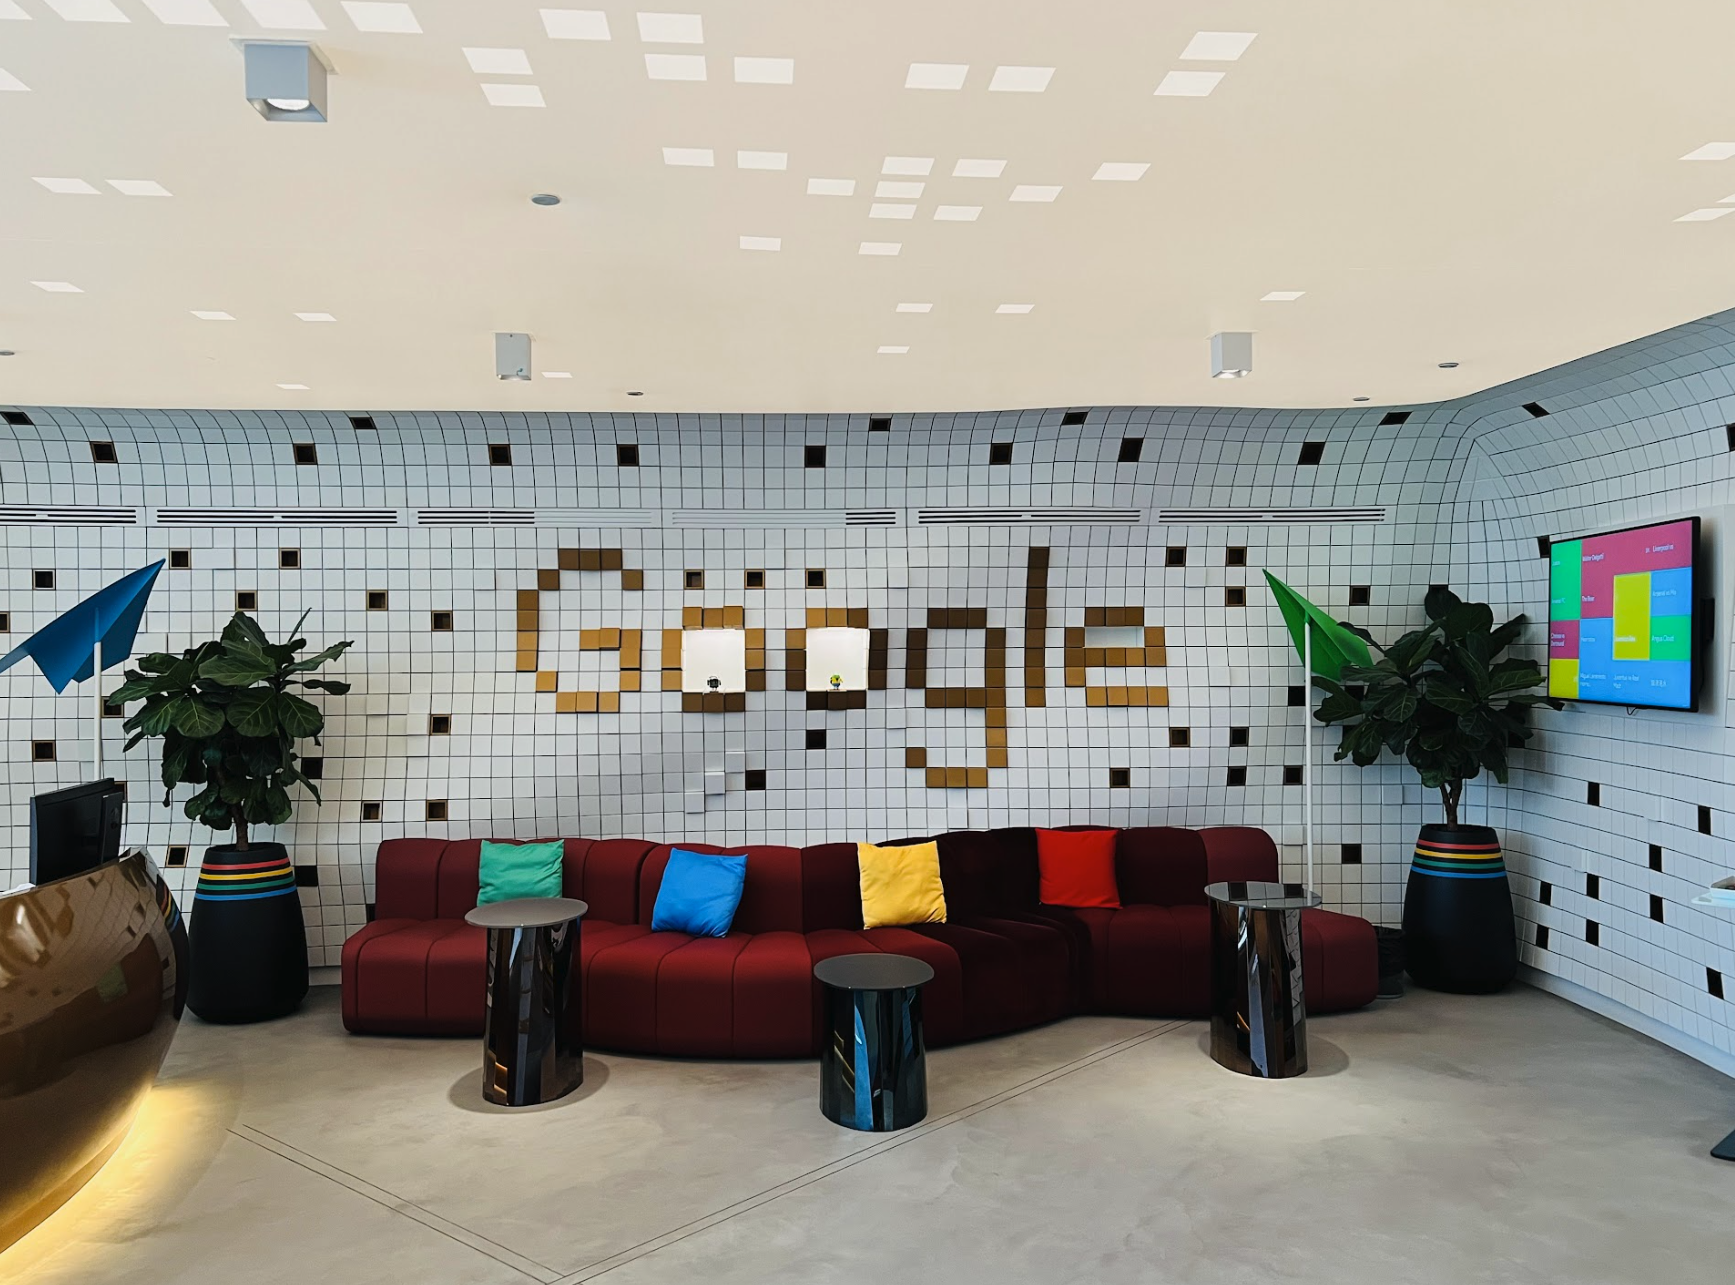 구글 두바이 오피스에 빨간 쇼파와 3개의 검은 탁자가  리셉션 공간에 놓여져 있는 모습. 물결 모양 벽에 타일로 구글이라는 단어가 쓰여져 있는 모습.